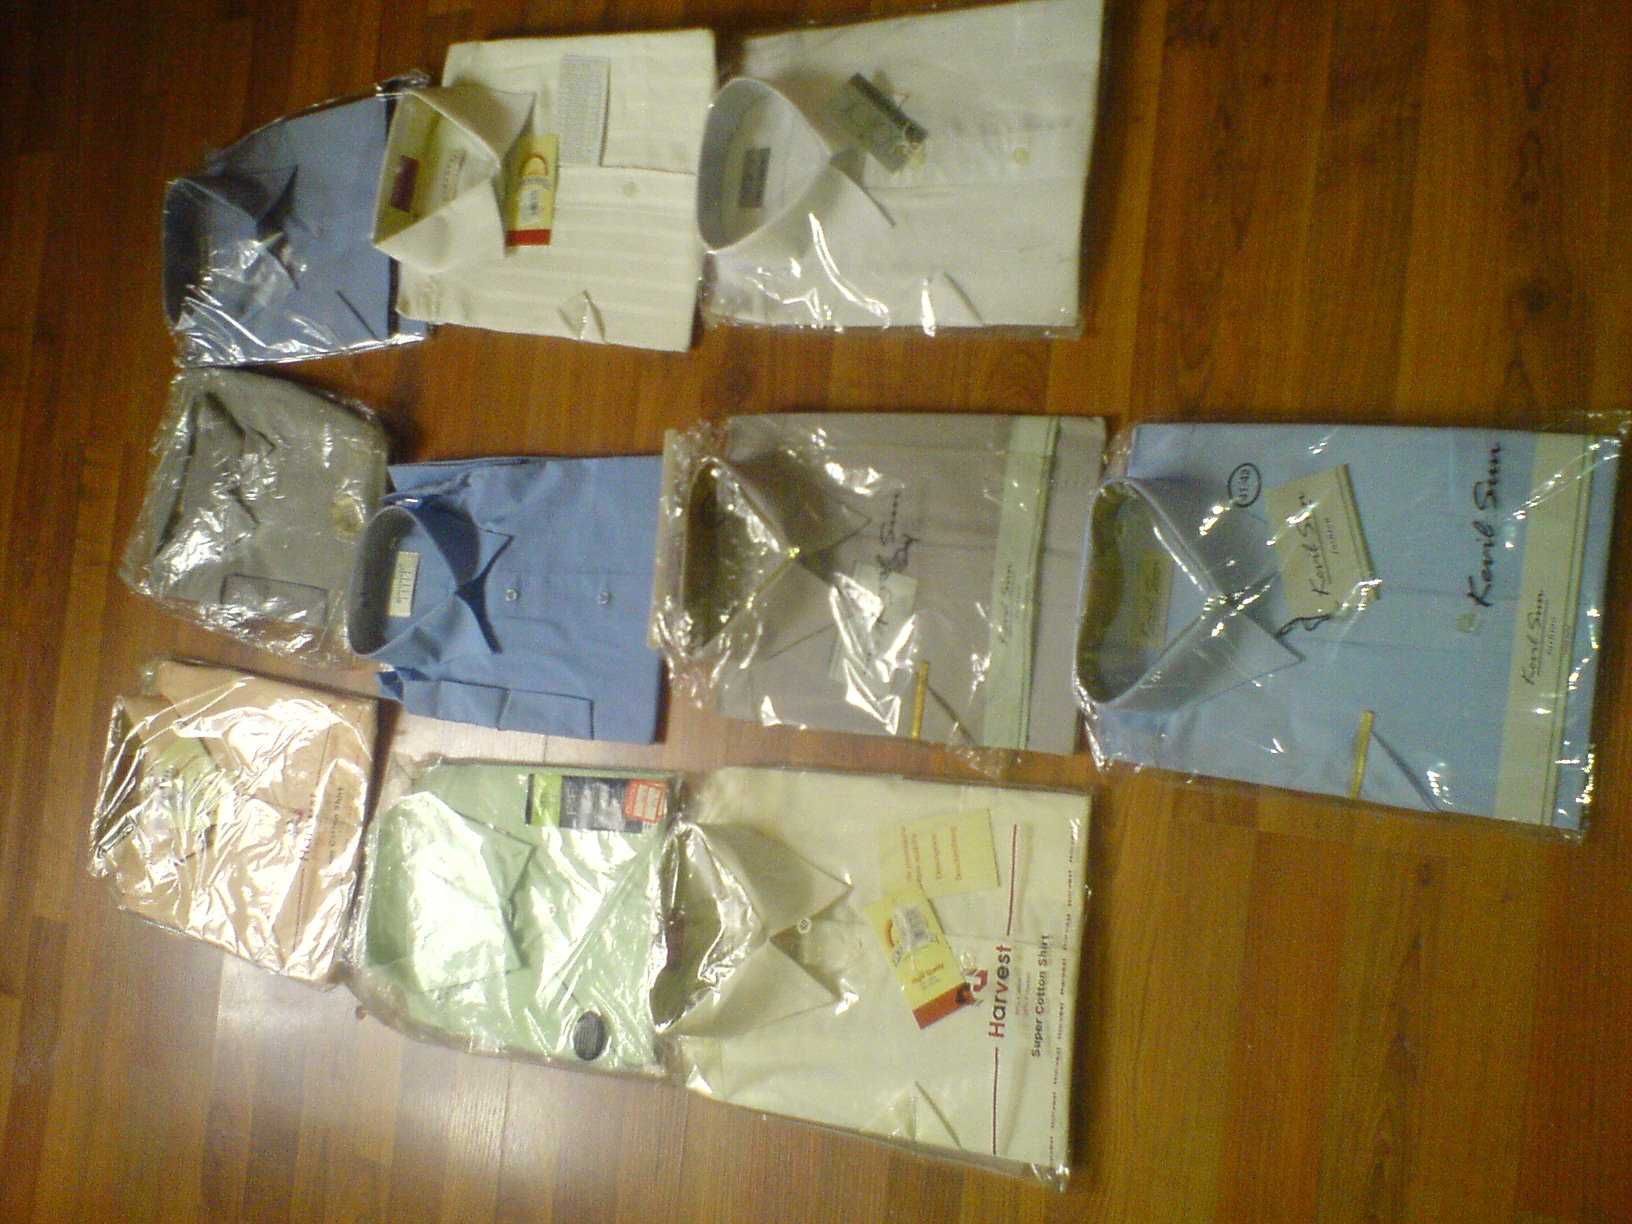 Koszula Męska Krótki Rękaw wzór/kolor, 176-188, 40-45, bawełna NOWE